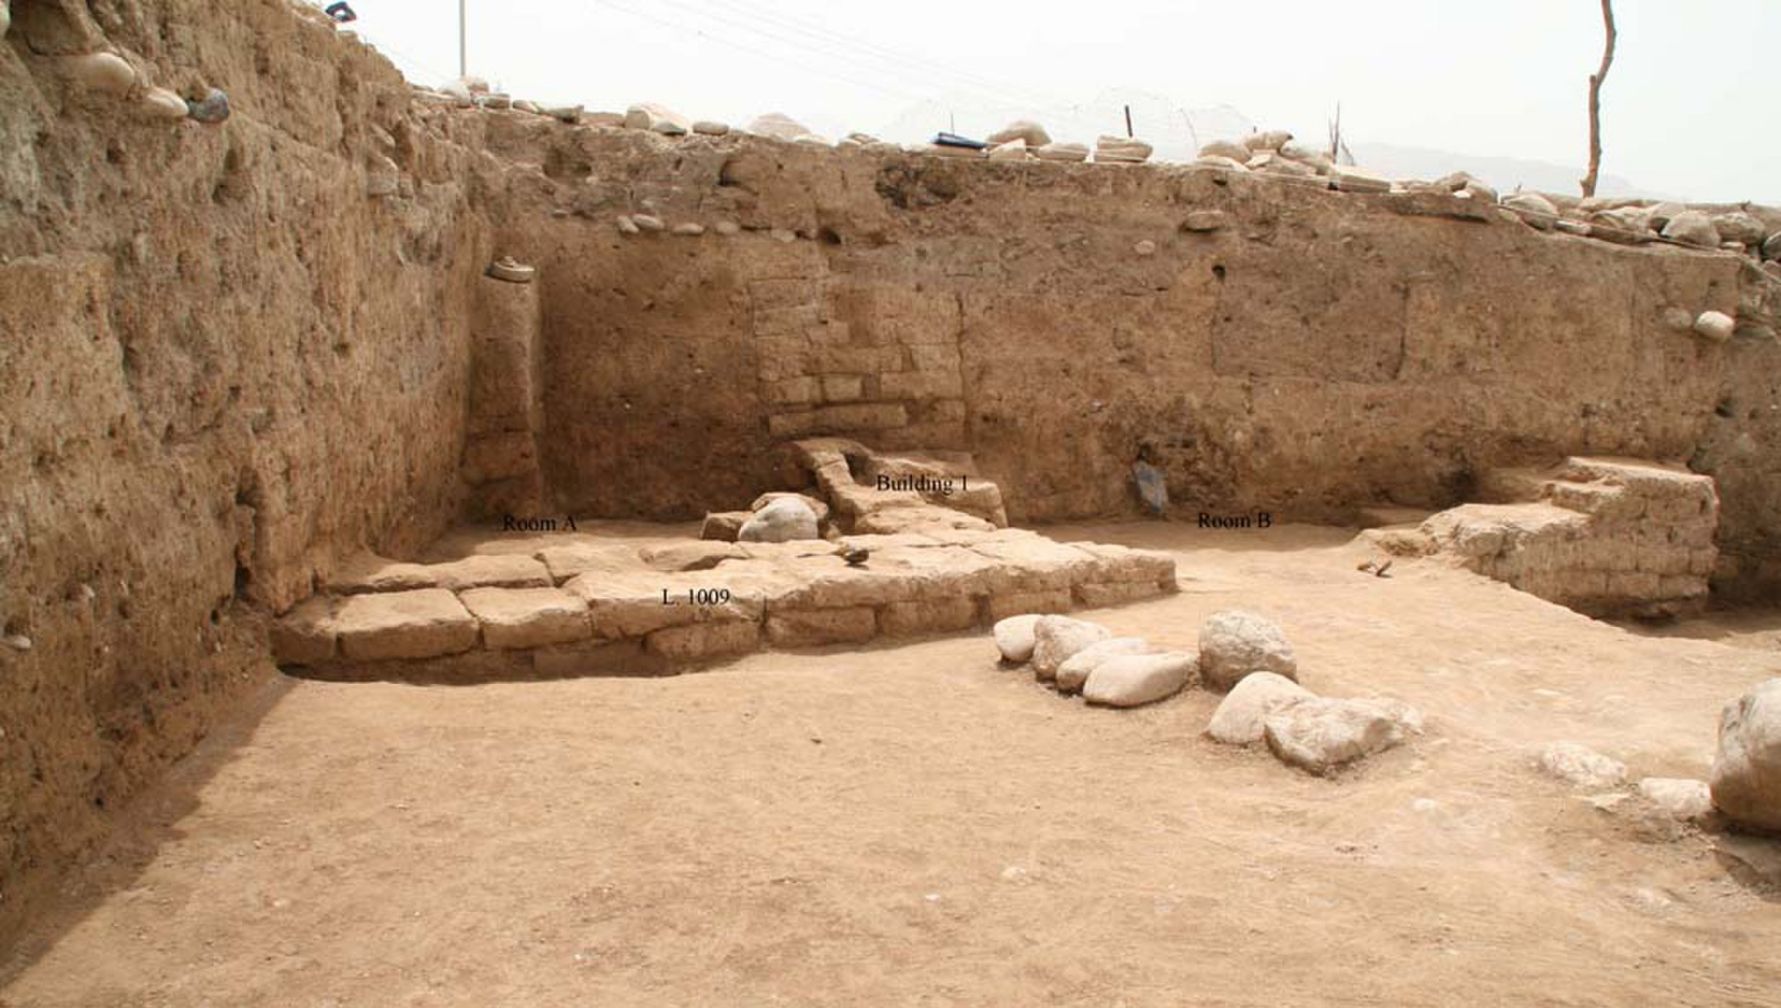 A régészek az észak-iraki kurdisztáni régióban felfedeztek egy ősi várost, amelyet „Idu”-nak hívtak. A területet már a neolitikumban foglalták el, amikor a gazdálkodás először jelent meg a Közel-Keleten, és a város 3,300 és 2,900 évvel ezelőtt érte el a legnagyobb kiterjedését. Az itt látható épület egy legalább két szobás, háztartási épület, amely a város életének viszonylag késői szakaszára datálható, talán körülbelül 2,000 évvel ezelőtt, amikor a Pártus Birodalom irányította a területet.